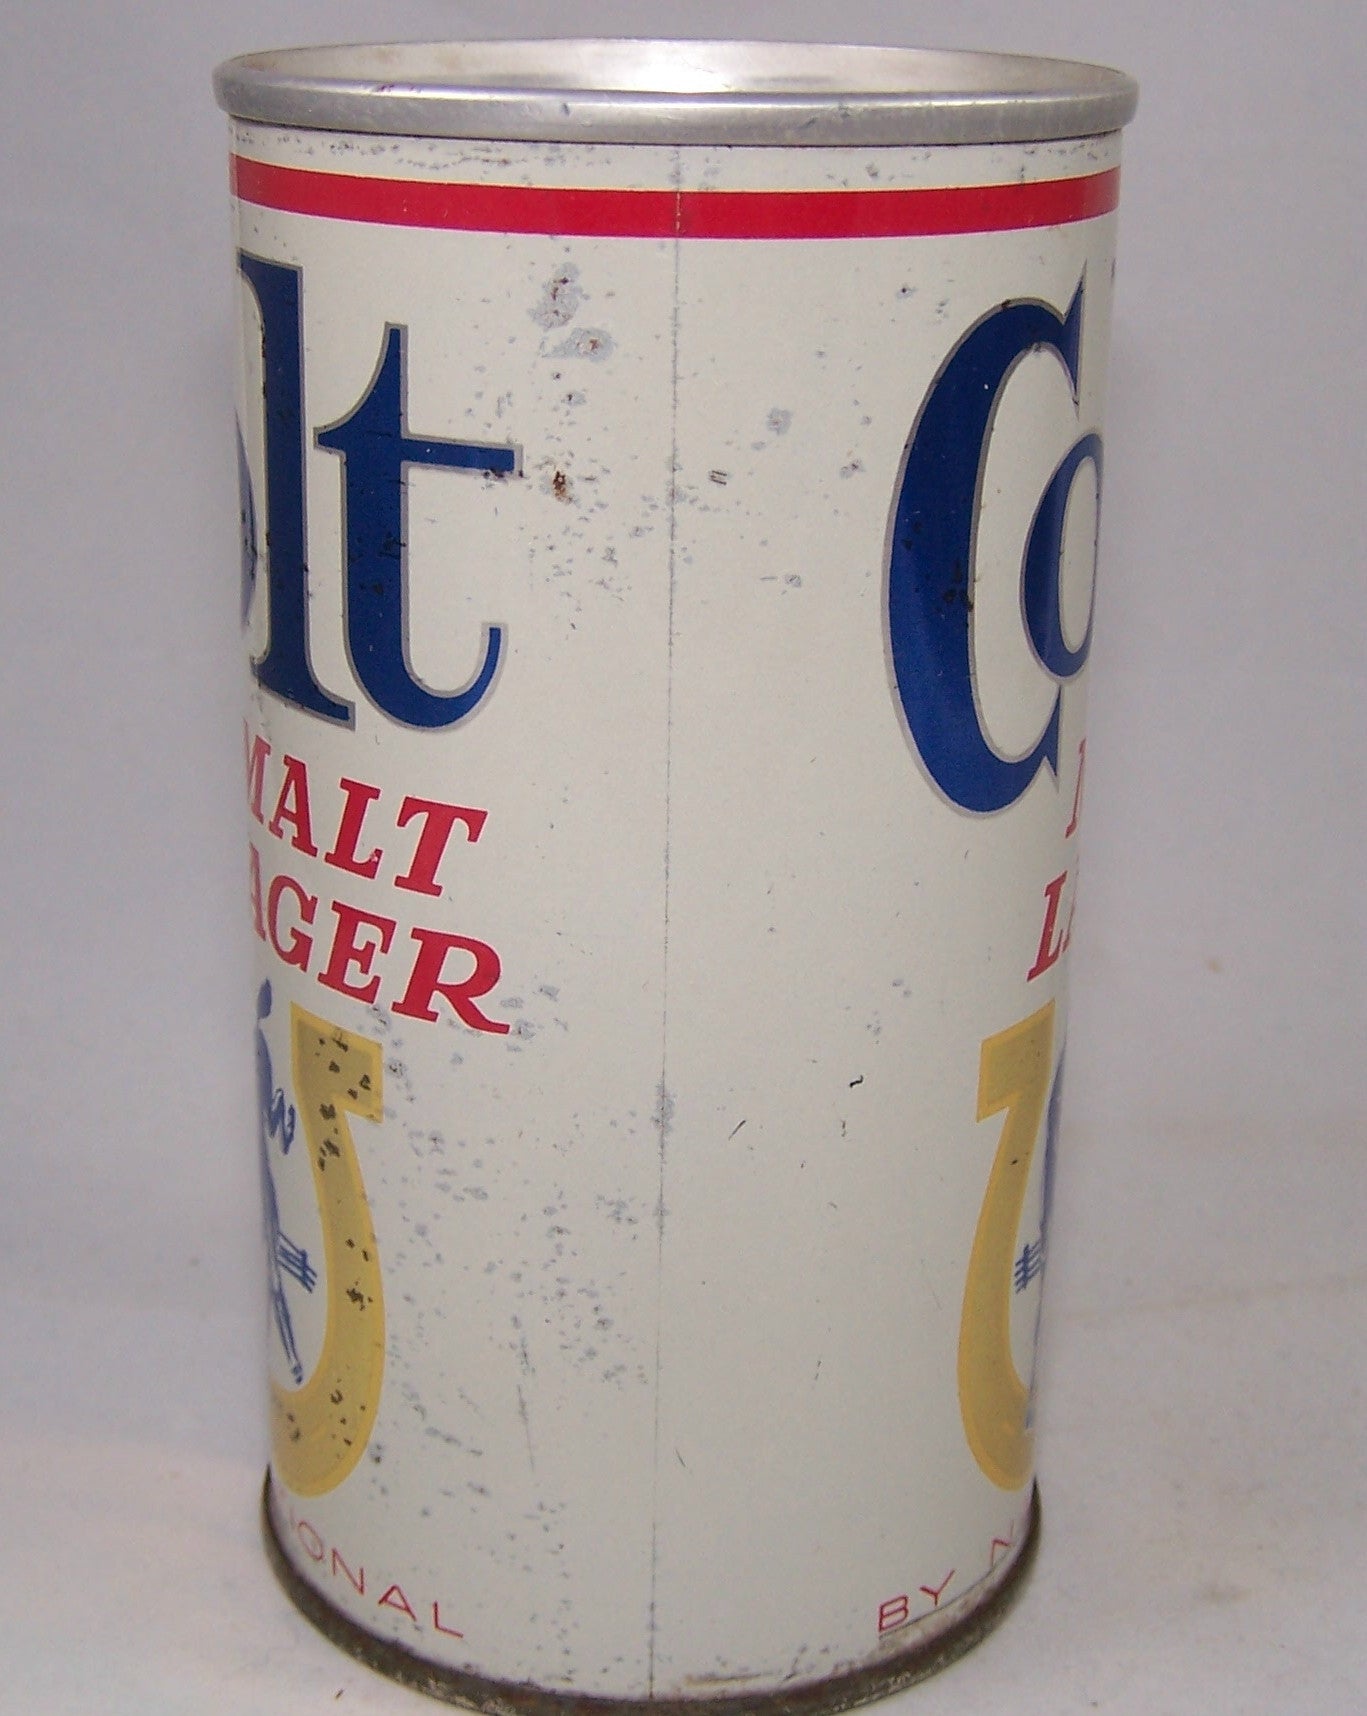 Colt Malt Lager, USBC II 56-09, Grade 1- Sold on 02/07/17